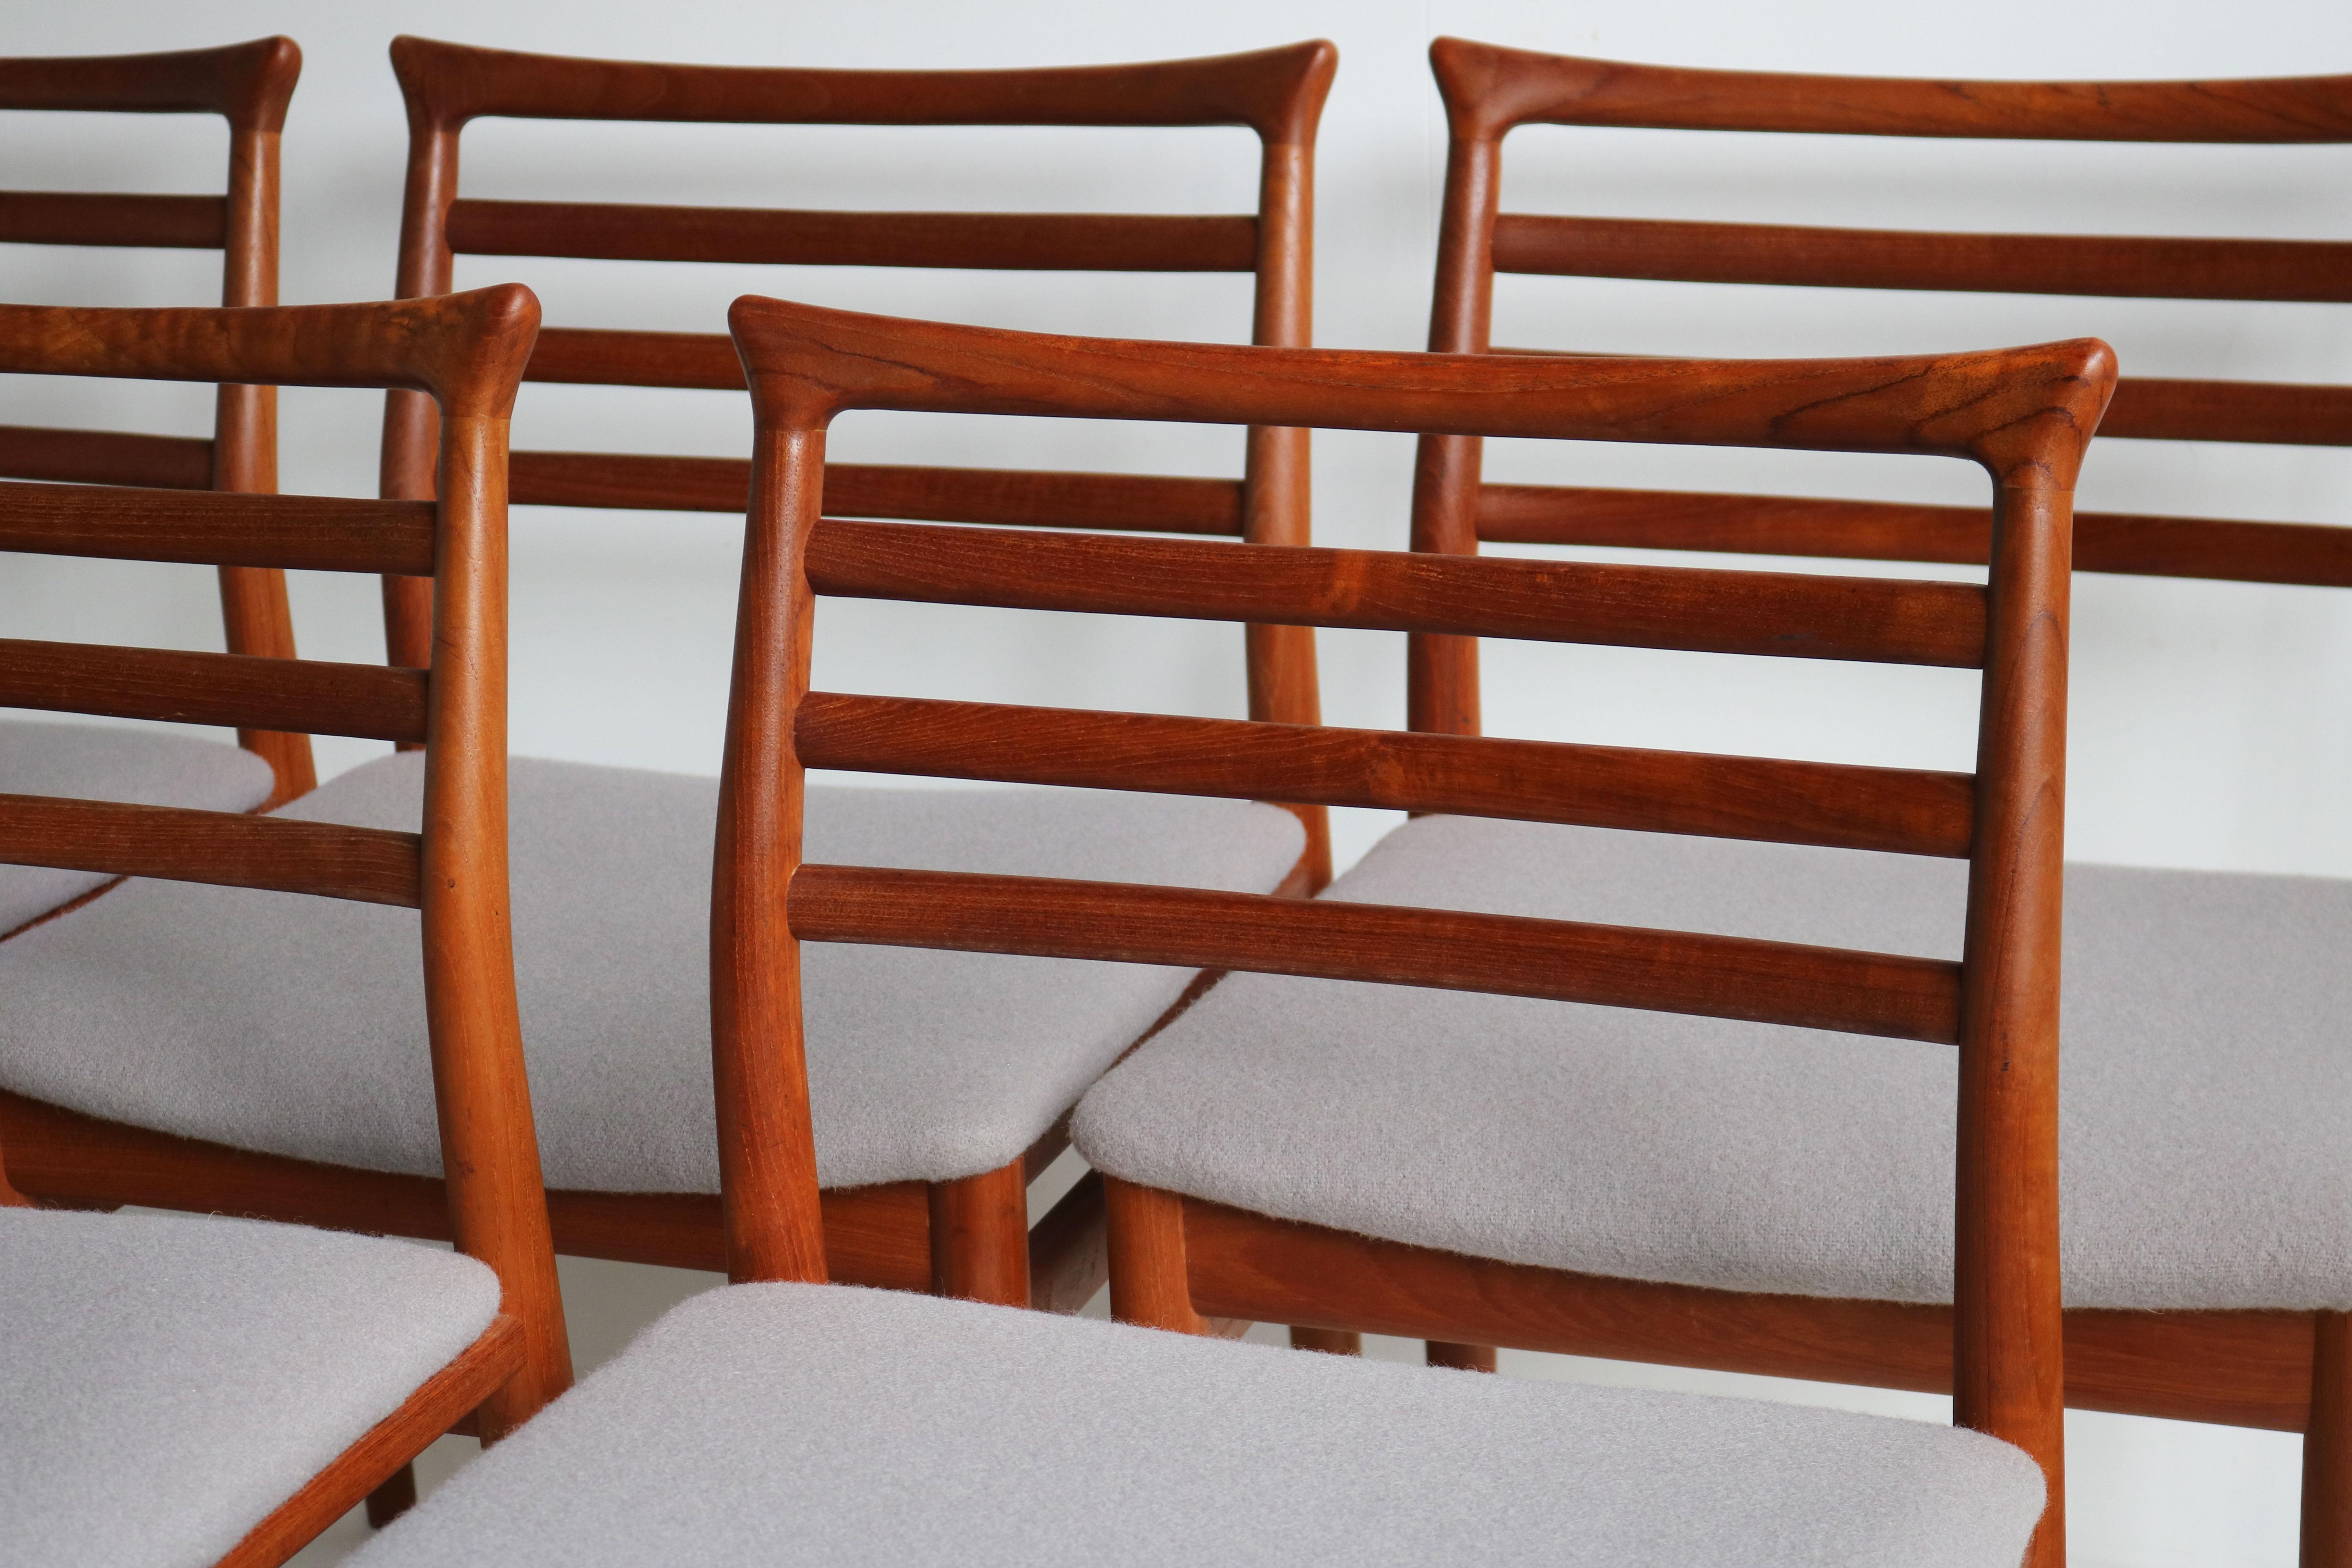 Améliorez votre salle à manger avec ce superbe ensemble de six chaises de salle à manger au design danois, créé par Erling Torvits pour la Sorø Stolefabrik en 1960. Fabriquées en teck massif, ces chaises incarnent la qualité inégalée de l'artisanat